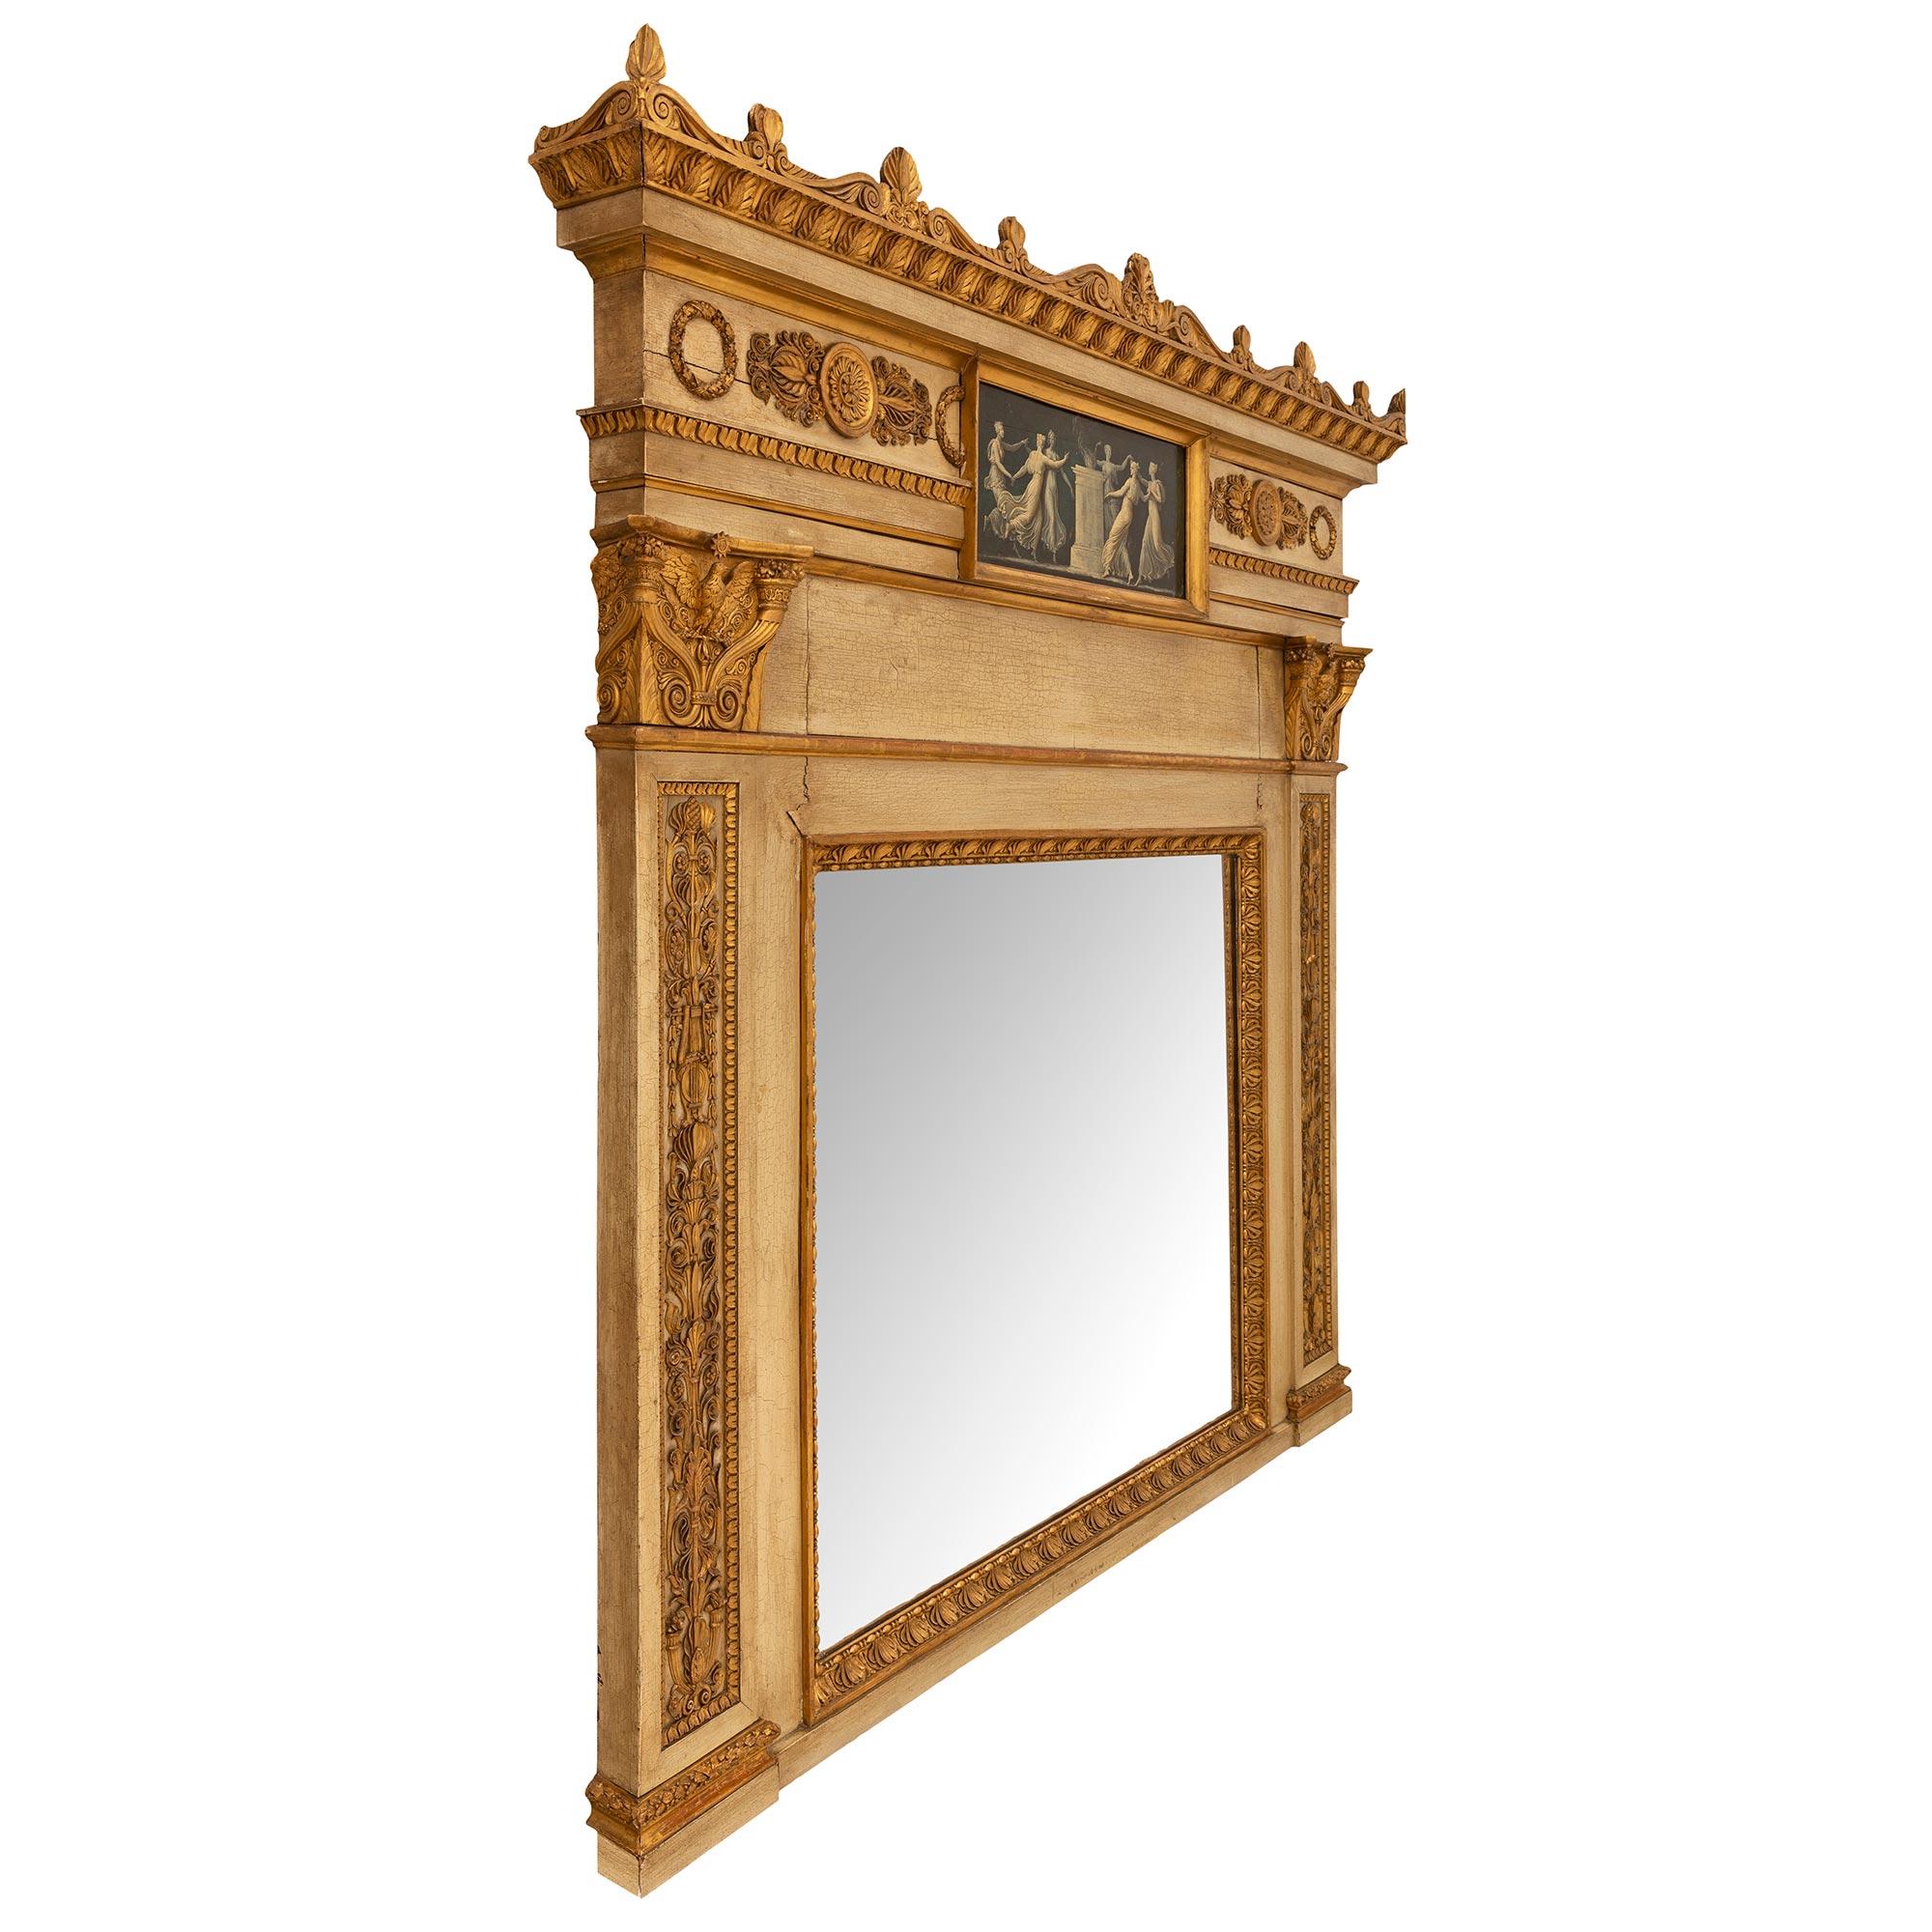 Ein auffallender und sehr eleganter italienischer neoklassizistischer Spiegel aus patiniertem und vergoldetem Holz des 19. Das Trumeau bewahrt seine ursprüngliche Spiegelplatte, die in eine auffällige, reich geschnitzte Palmette aus vergoldetem Holz